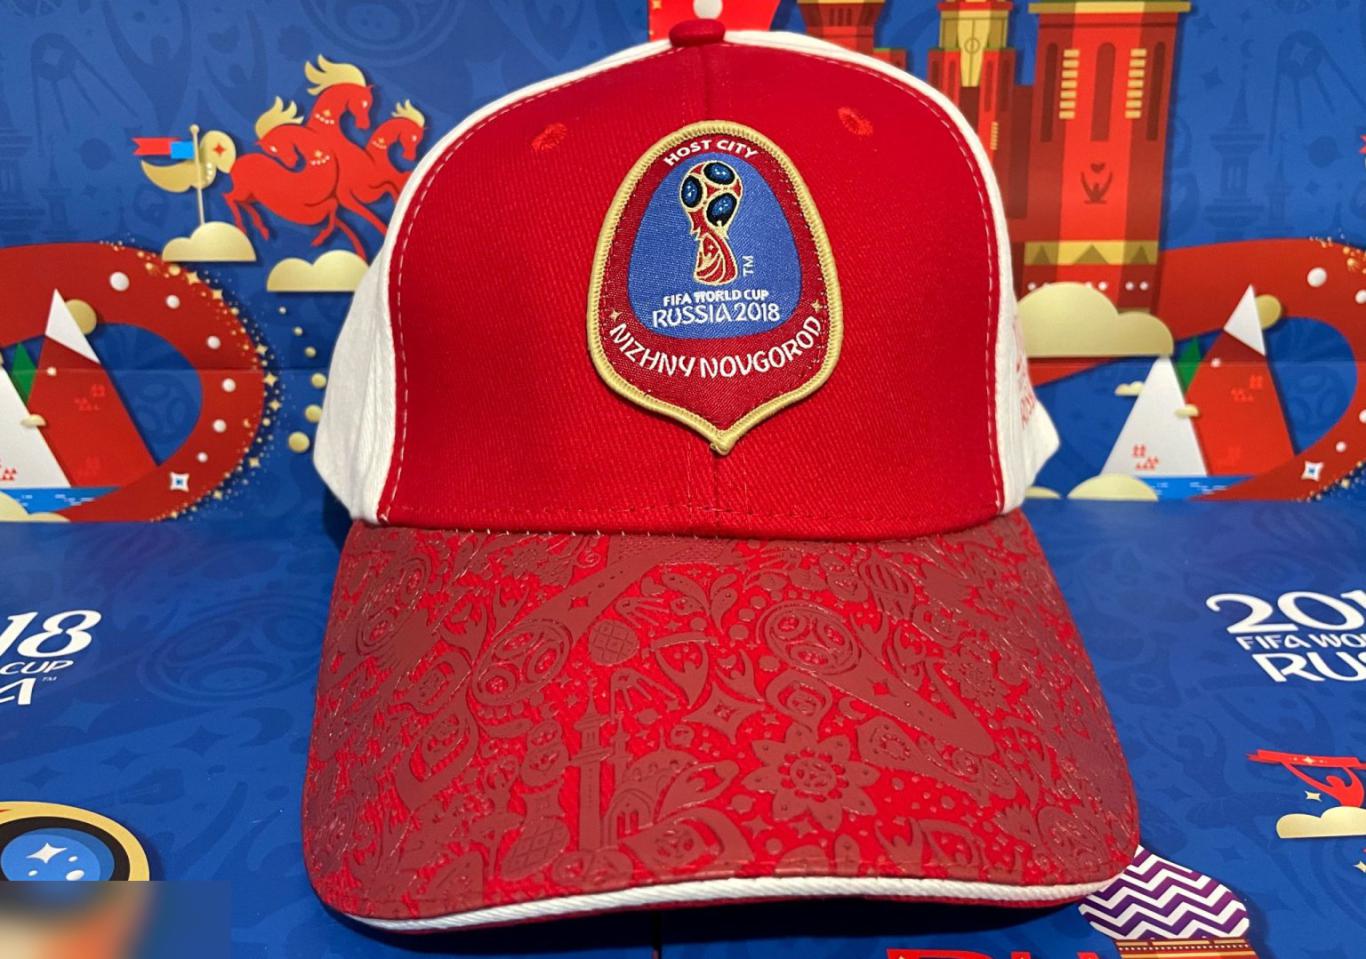 ОПТОВЫЙ ЛОТ! 4 эксклюзивные кепки Организатора Чемпионата мира Fifa 2018